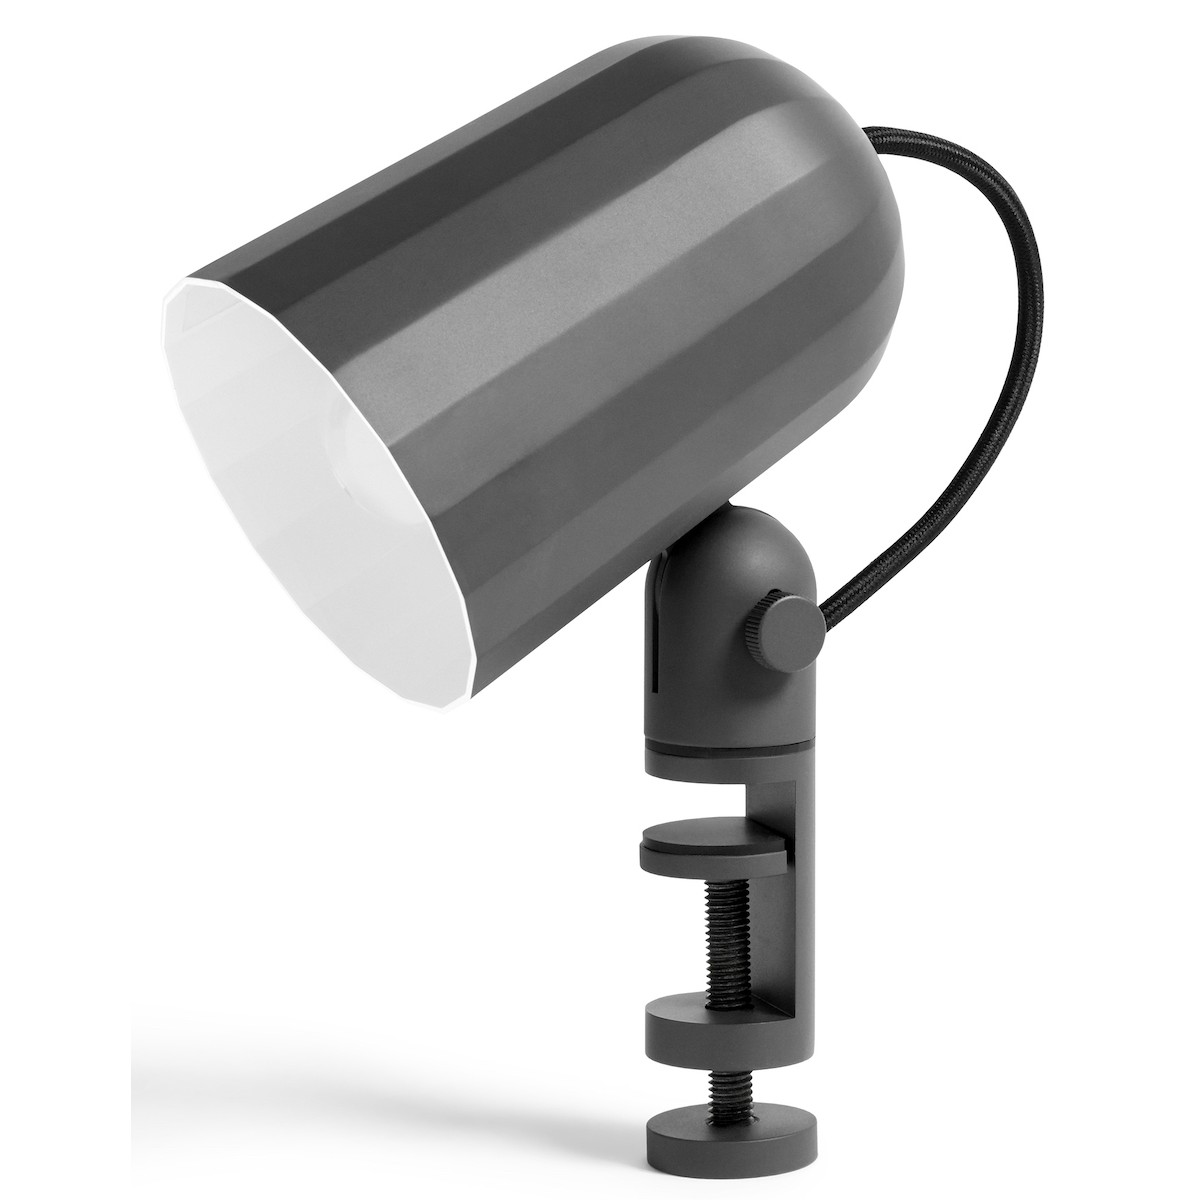 dark grey - Noc clip lamp